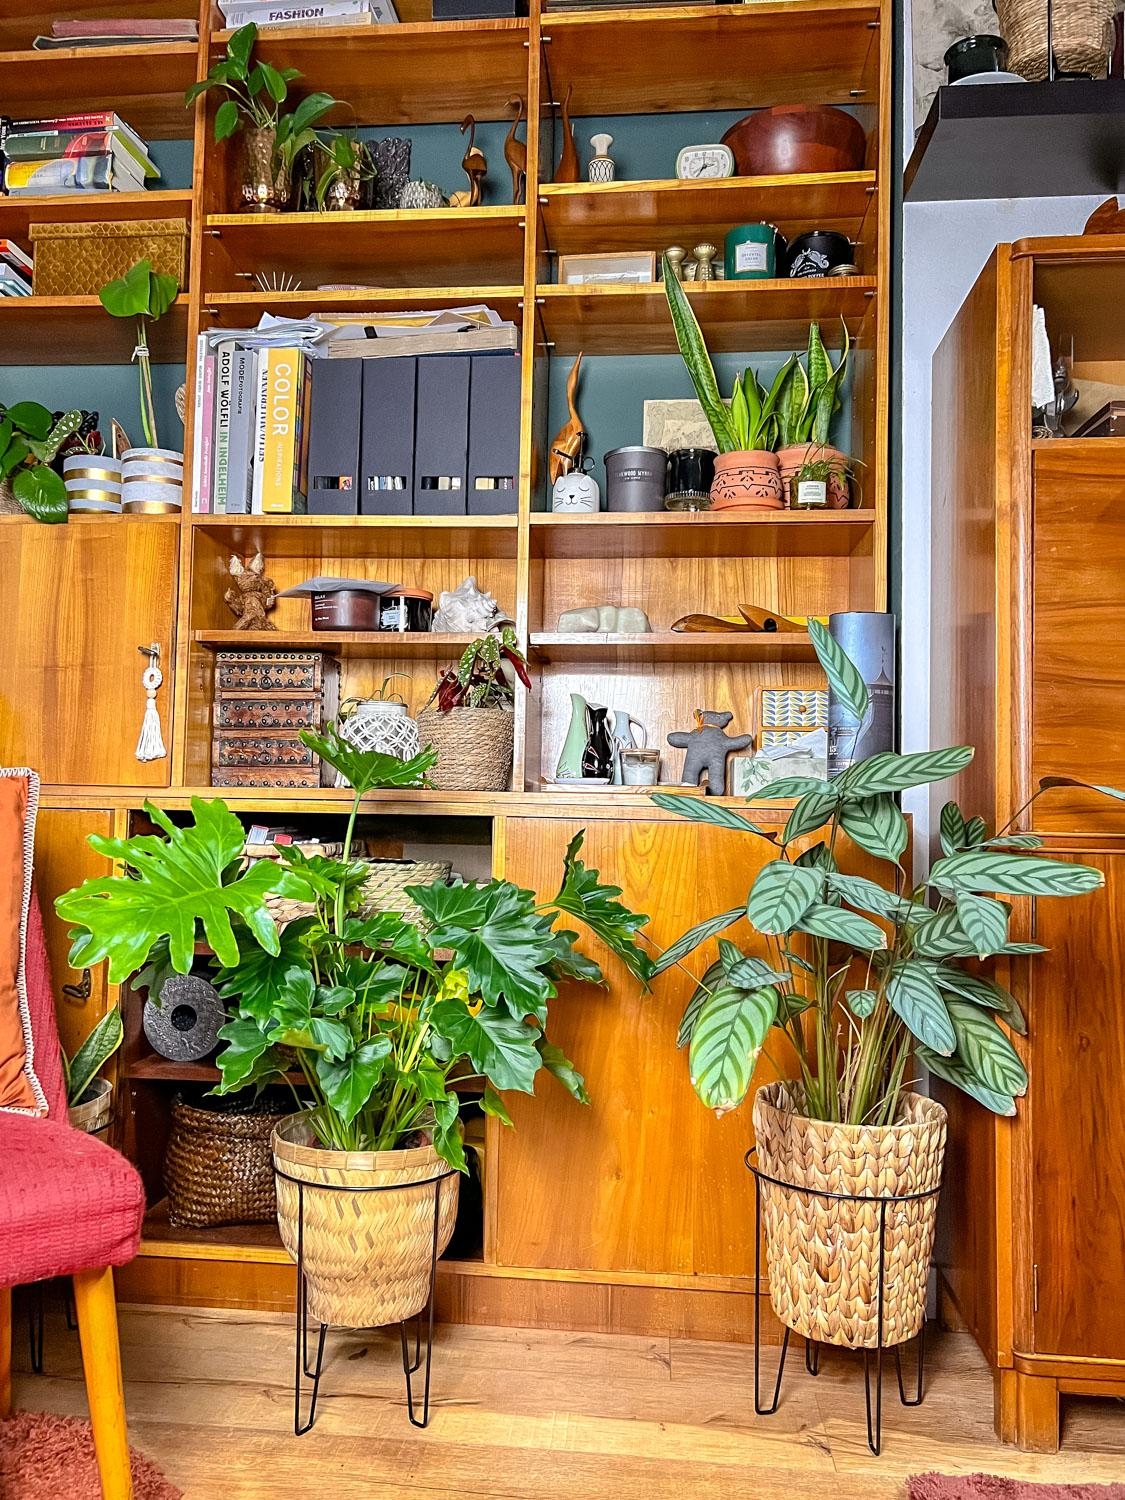 Pflanzenliebe! Katzen, Pflanzen und Vintage in meiner Potsdamer Jugendstil-Maisonette! #vintage #sustainablehome #plants